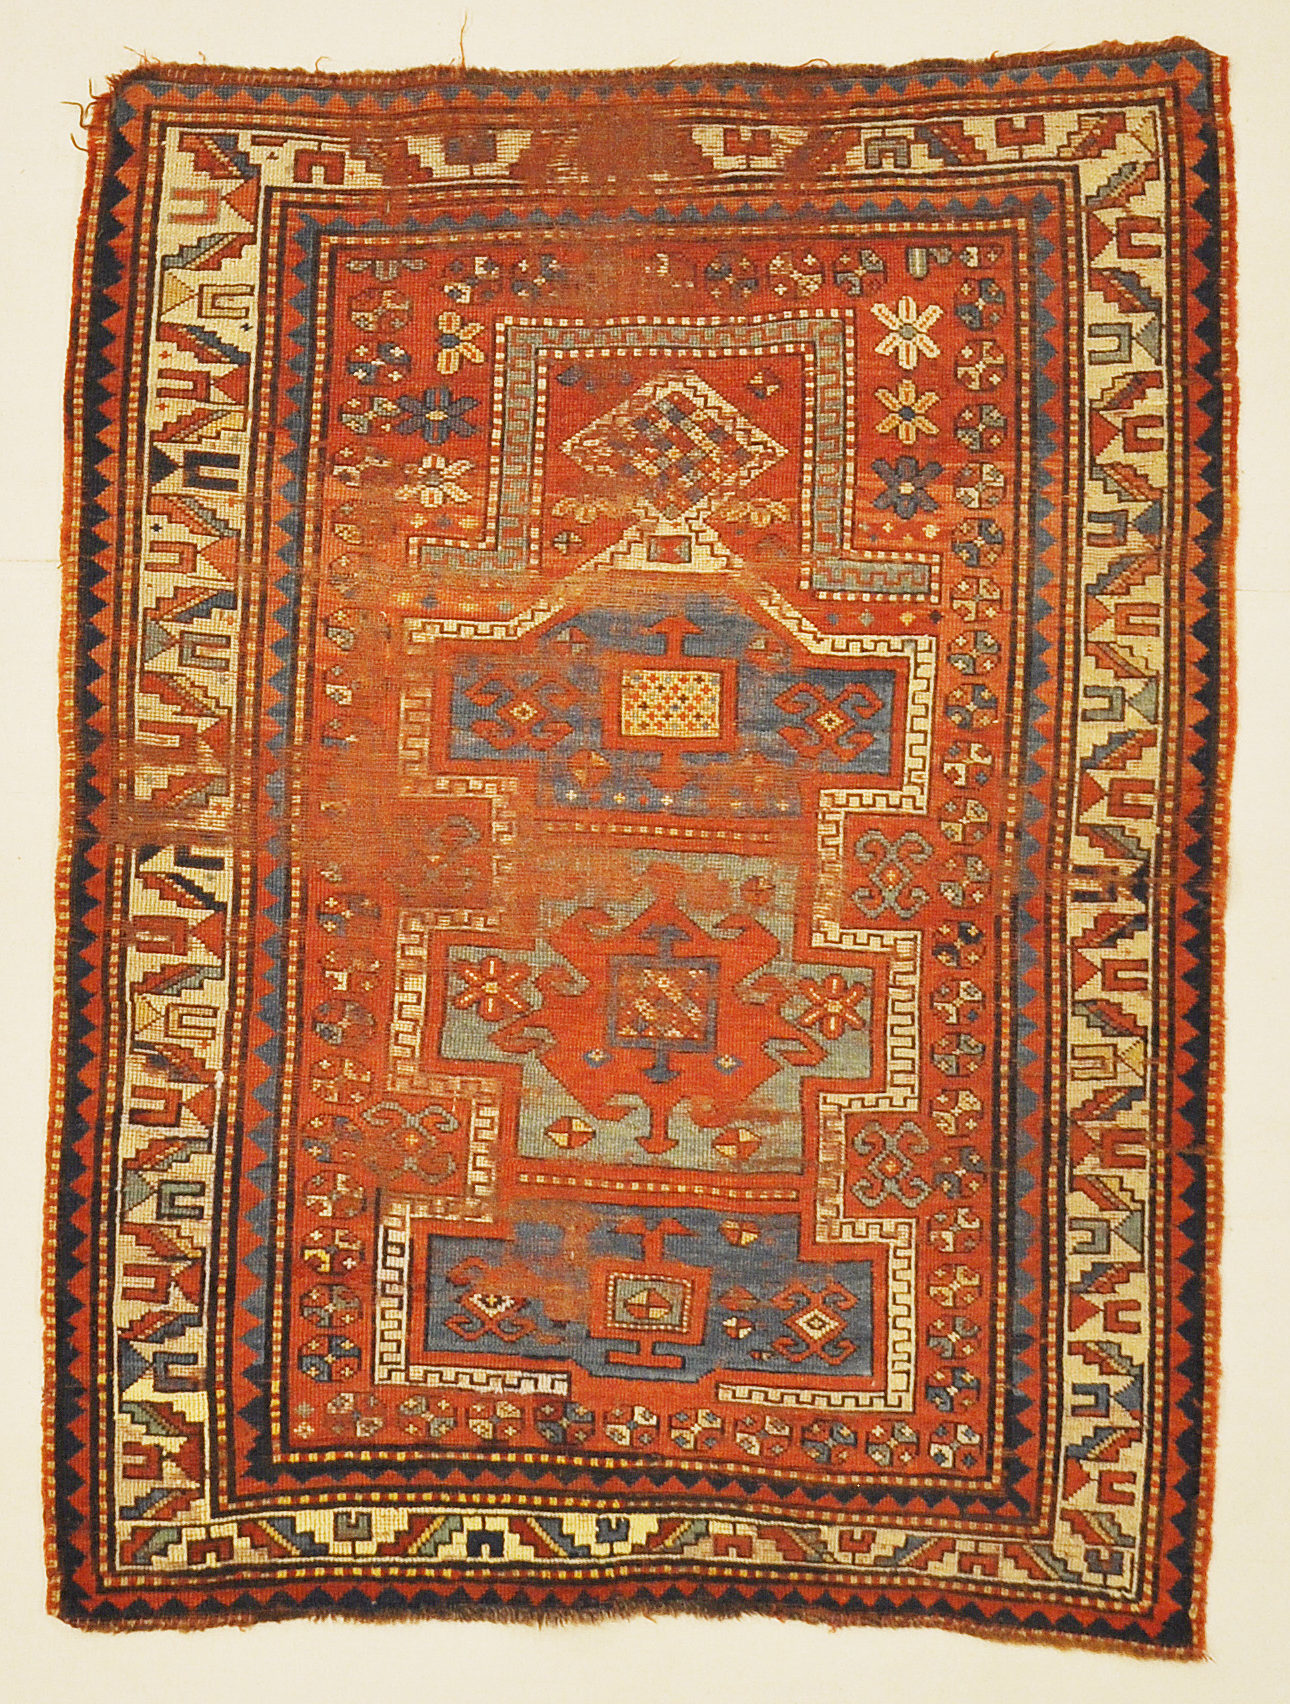 Antique Fachralo Kazak Rare Prayer Rug from Caucasus Genuine Woven Carpet Art Authentic Santa Barbara Design Center Rugs and More